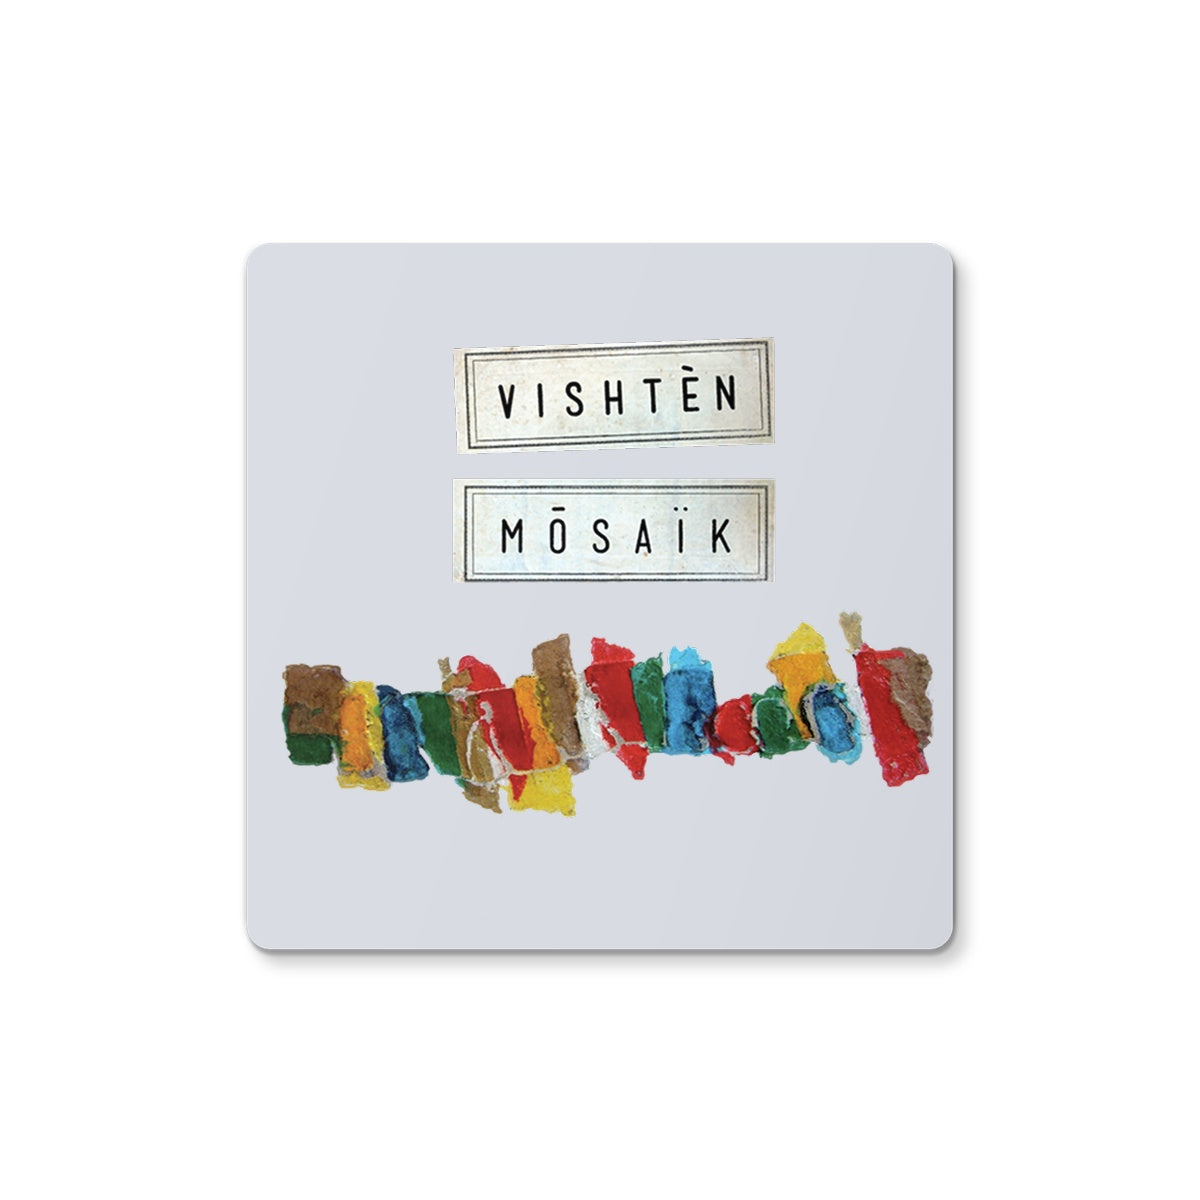 Vishtèn "Mosaic" Coaster